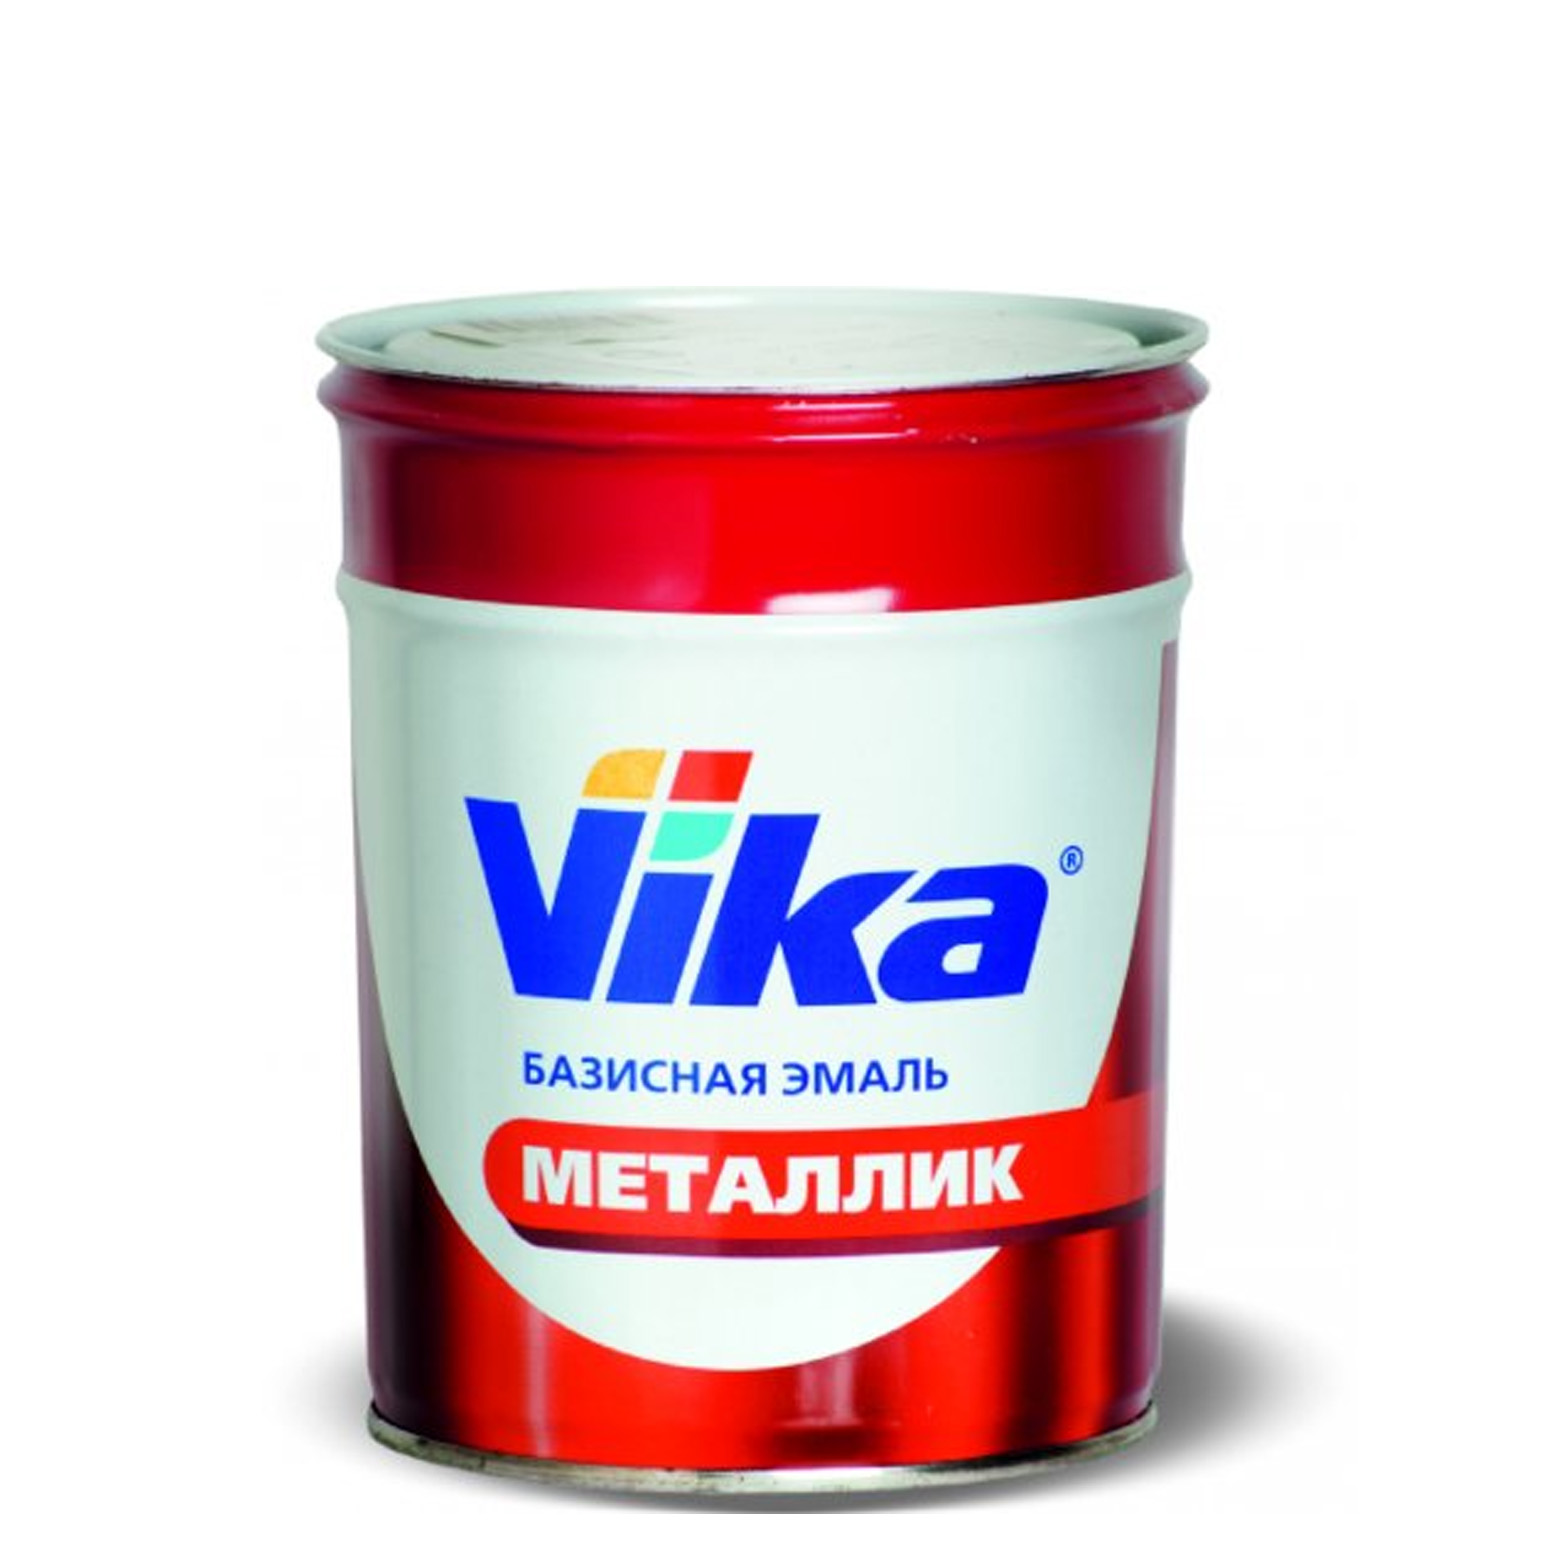 Фото 1 - Автоэмаль Металлик, цвет 247 карфоген, профессиональная базовая, - 0,9 кг Vika/Вика.